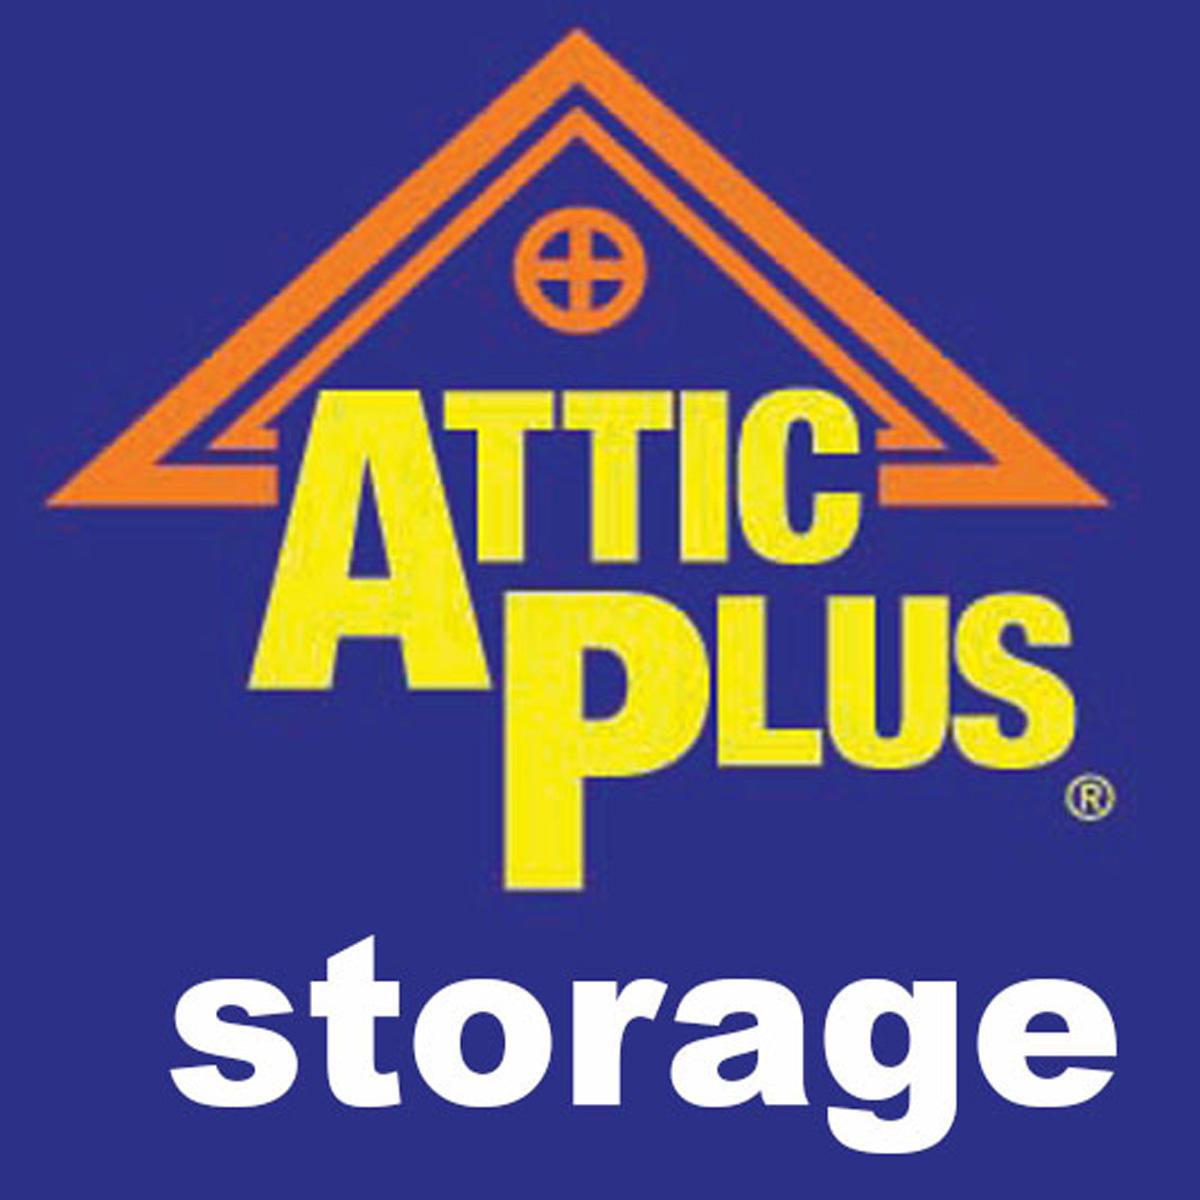 Attic Plus Storage - Cahaba Hts - Mtn Brook (1) - Vestavia Hills, AL 35243 - (205)969-4846 | ShowMeLocal.com